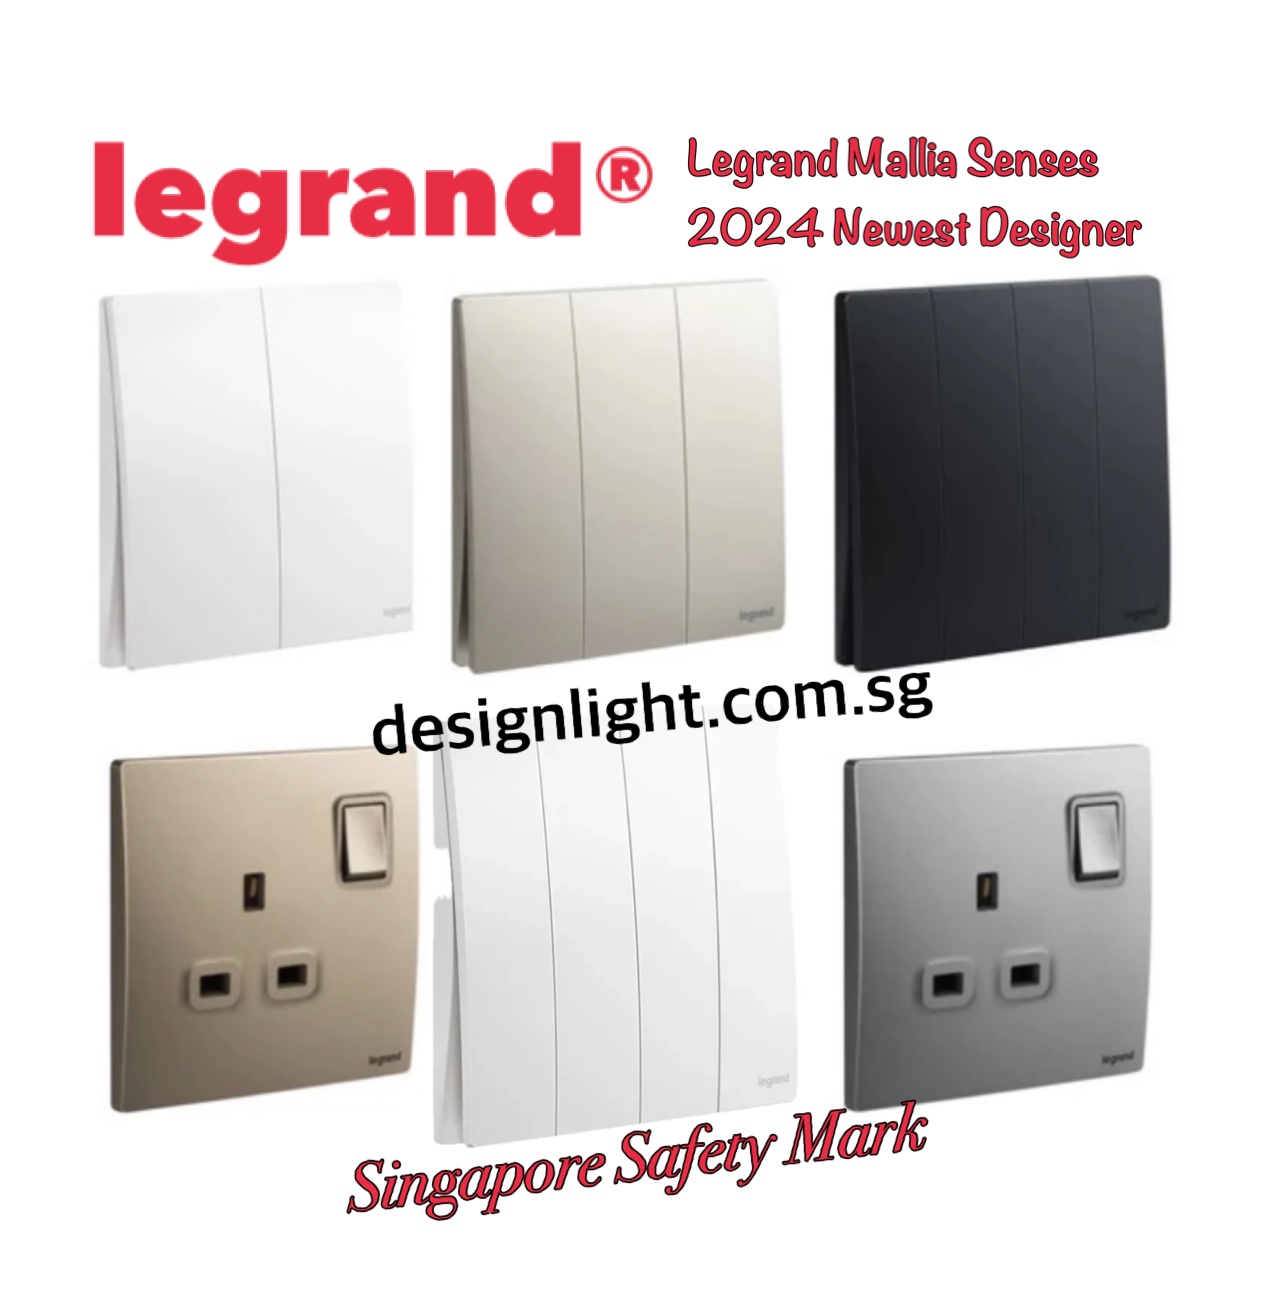 Legrand® Switch – Designlight.com.sg